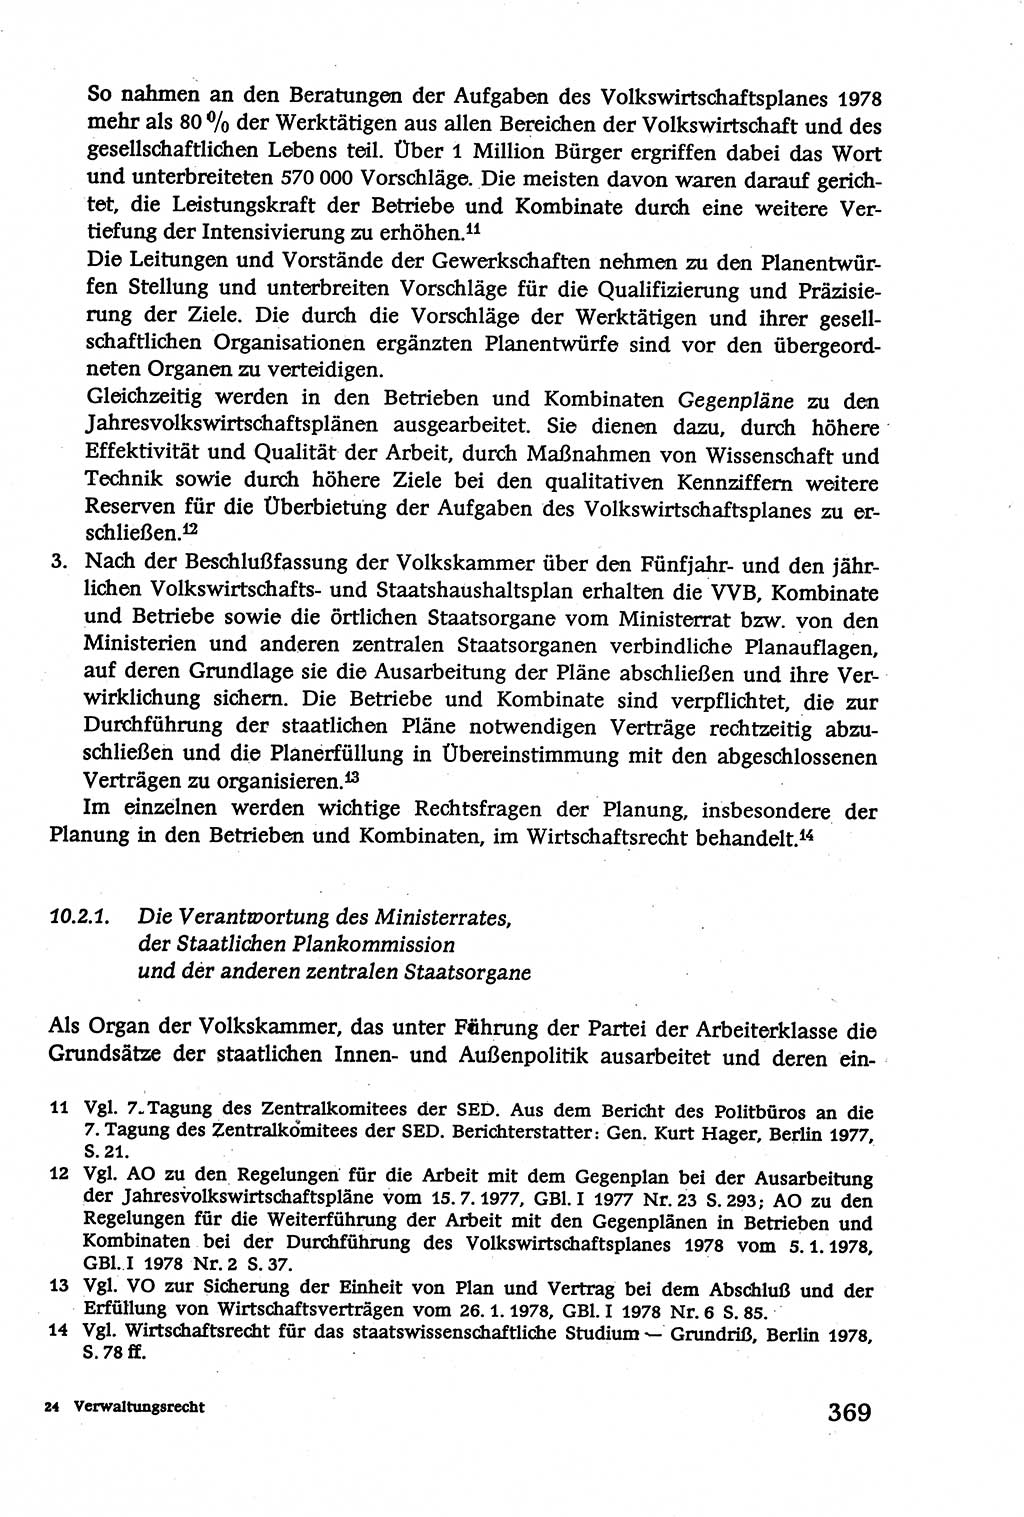 Verwaltungsrecht [Deutsche Demokratische Republik (DDR)], Lehrbuch 1979, Seite 369 (Verw.-R. DDR Lb. 1979, S. 369)